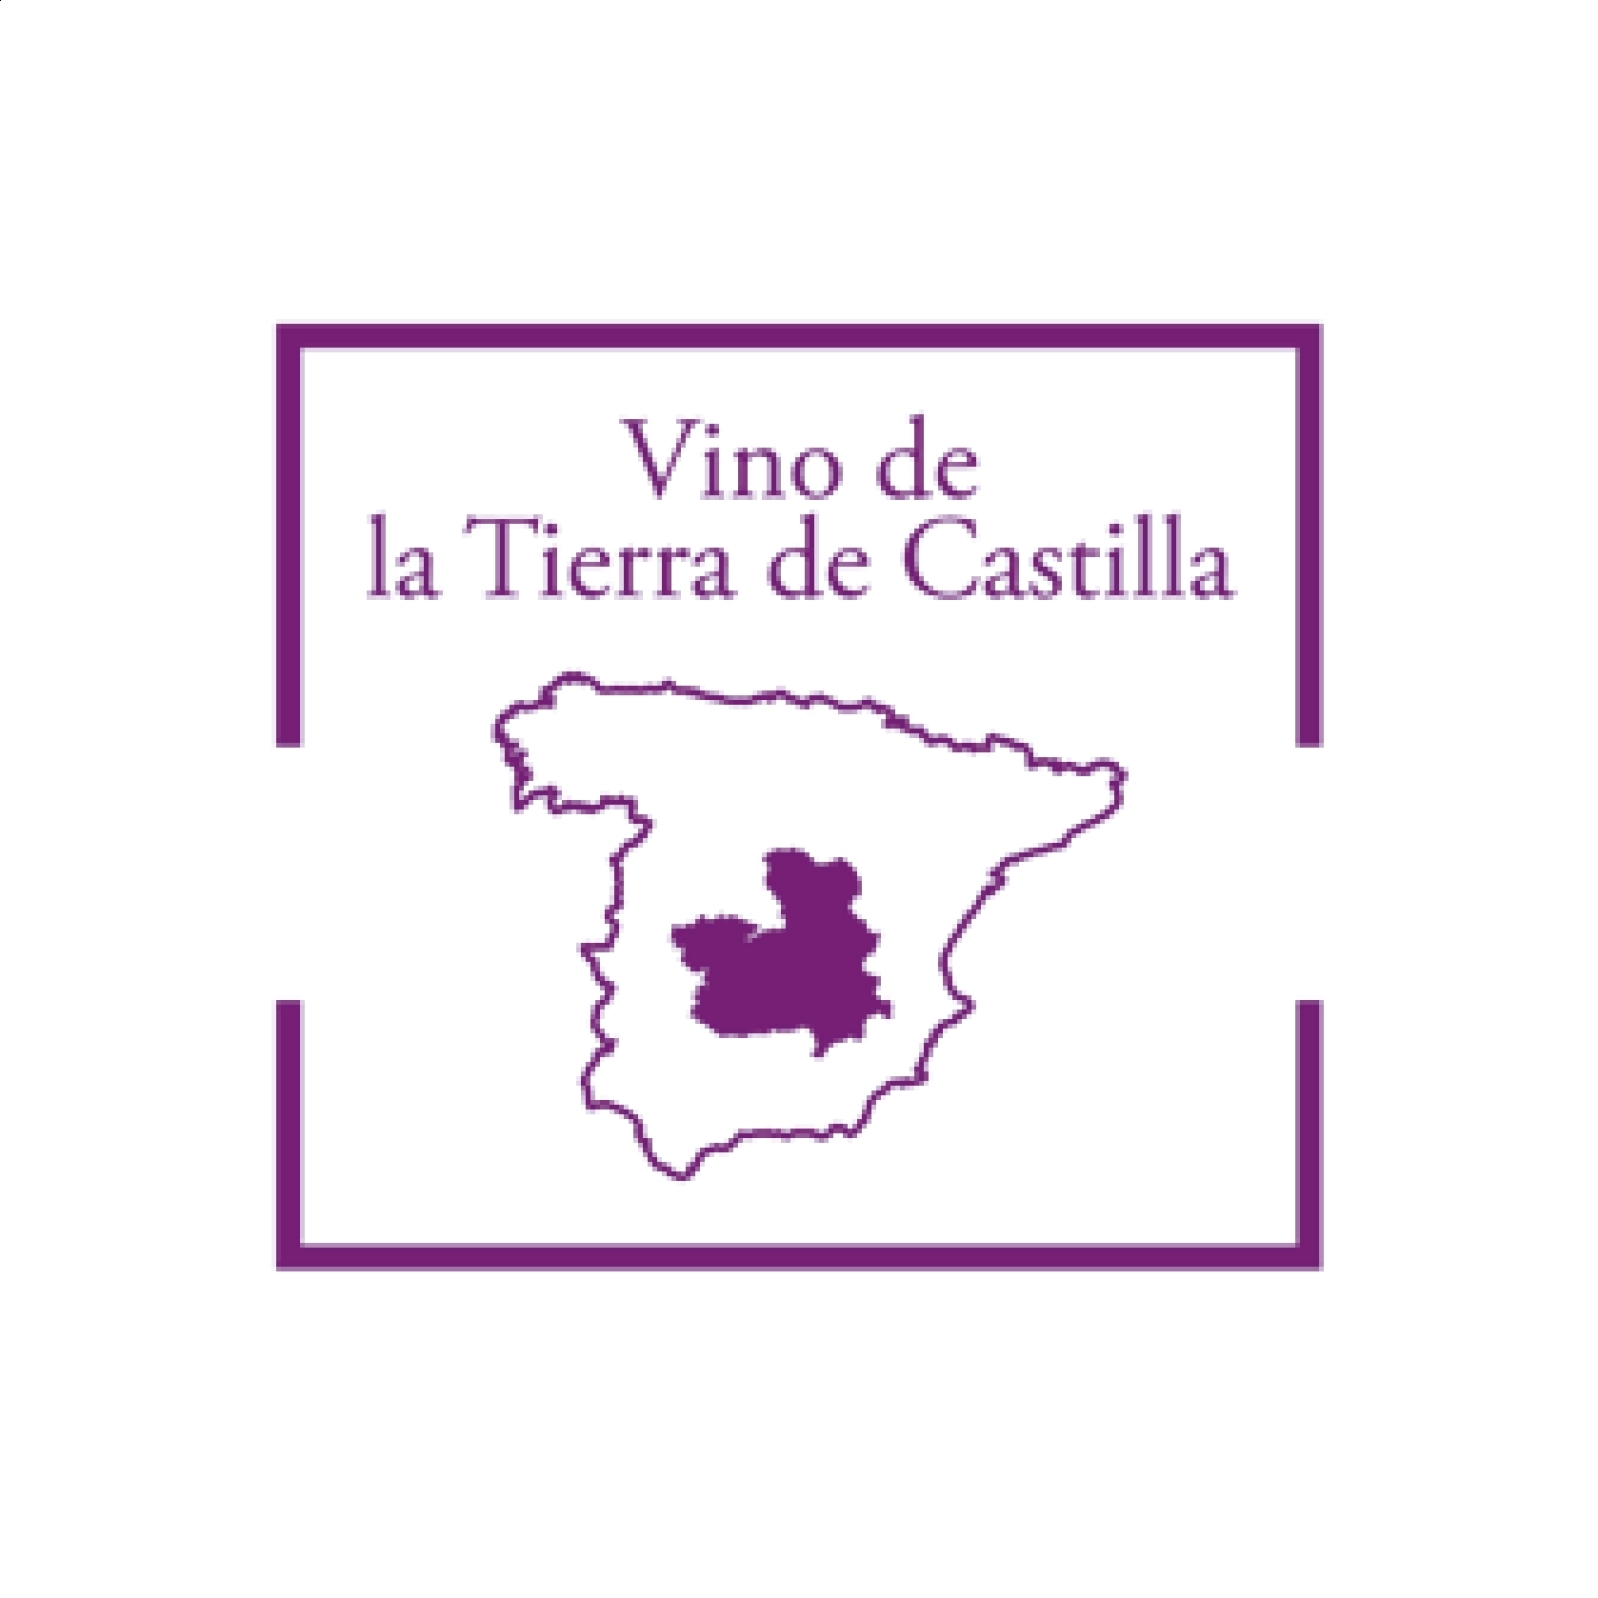 Bodegas Villavid - Lote Tintos 1952, IGP Vino de la Tierra de Castilla 75cl, 3uds